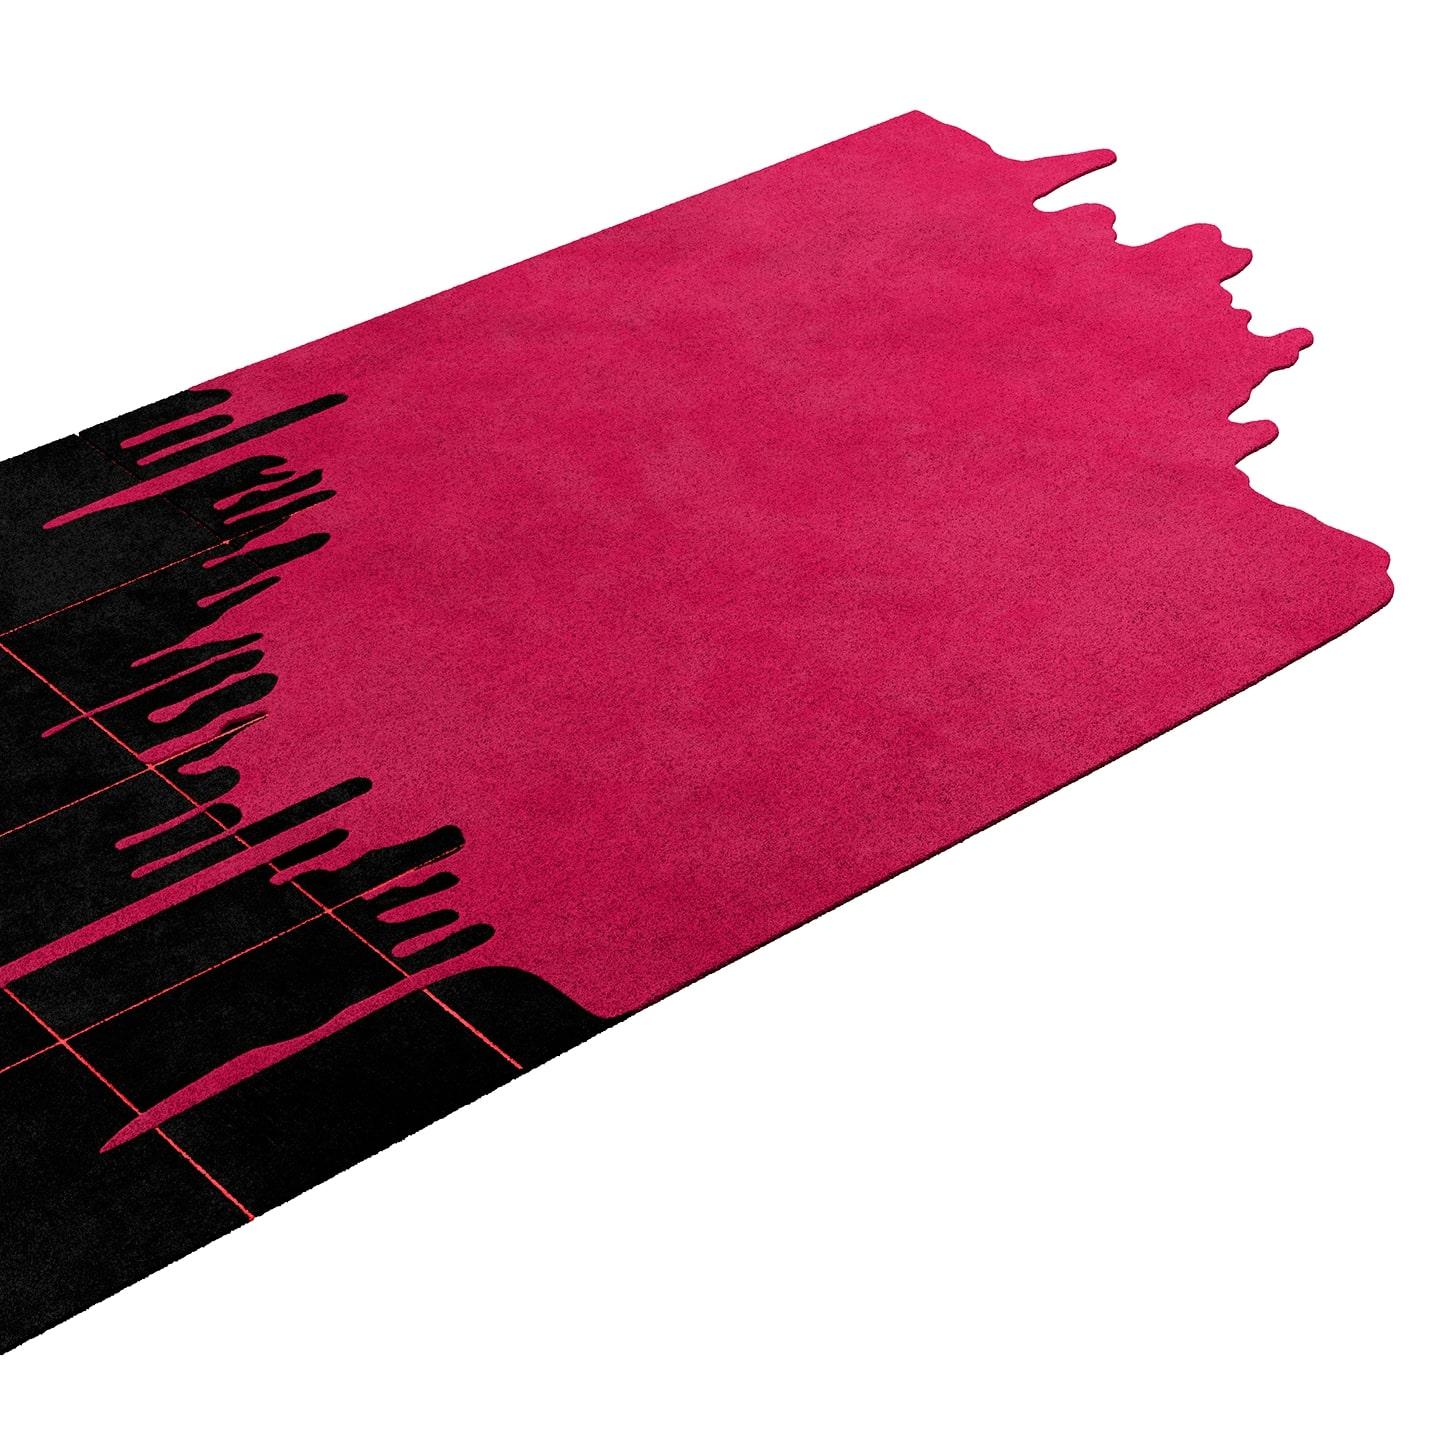 Moderner rechteckiger abstrakter handgetufteter Teppich rosa & schwarz

Tapis Shaped #056 ist ein schwarzer und rosafarbener Teppich, der zu einer Kollektion von trendigen Teppichen mit zeitgenössischem Flair für zeitlose Innenräume gehört.
Mit